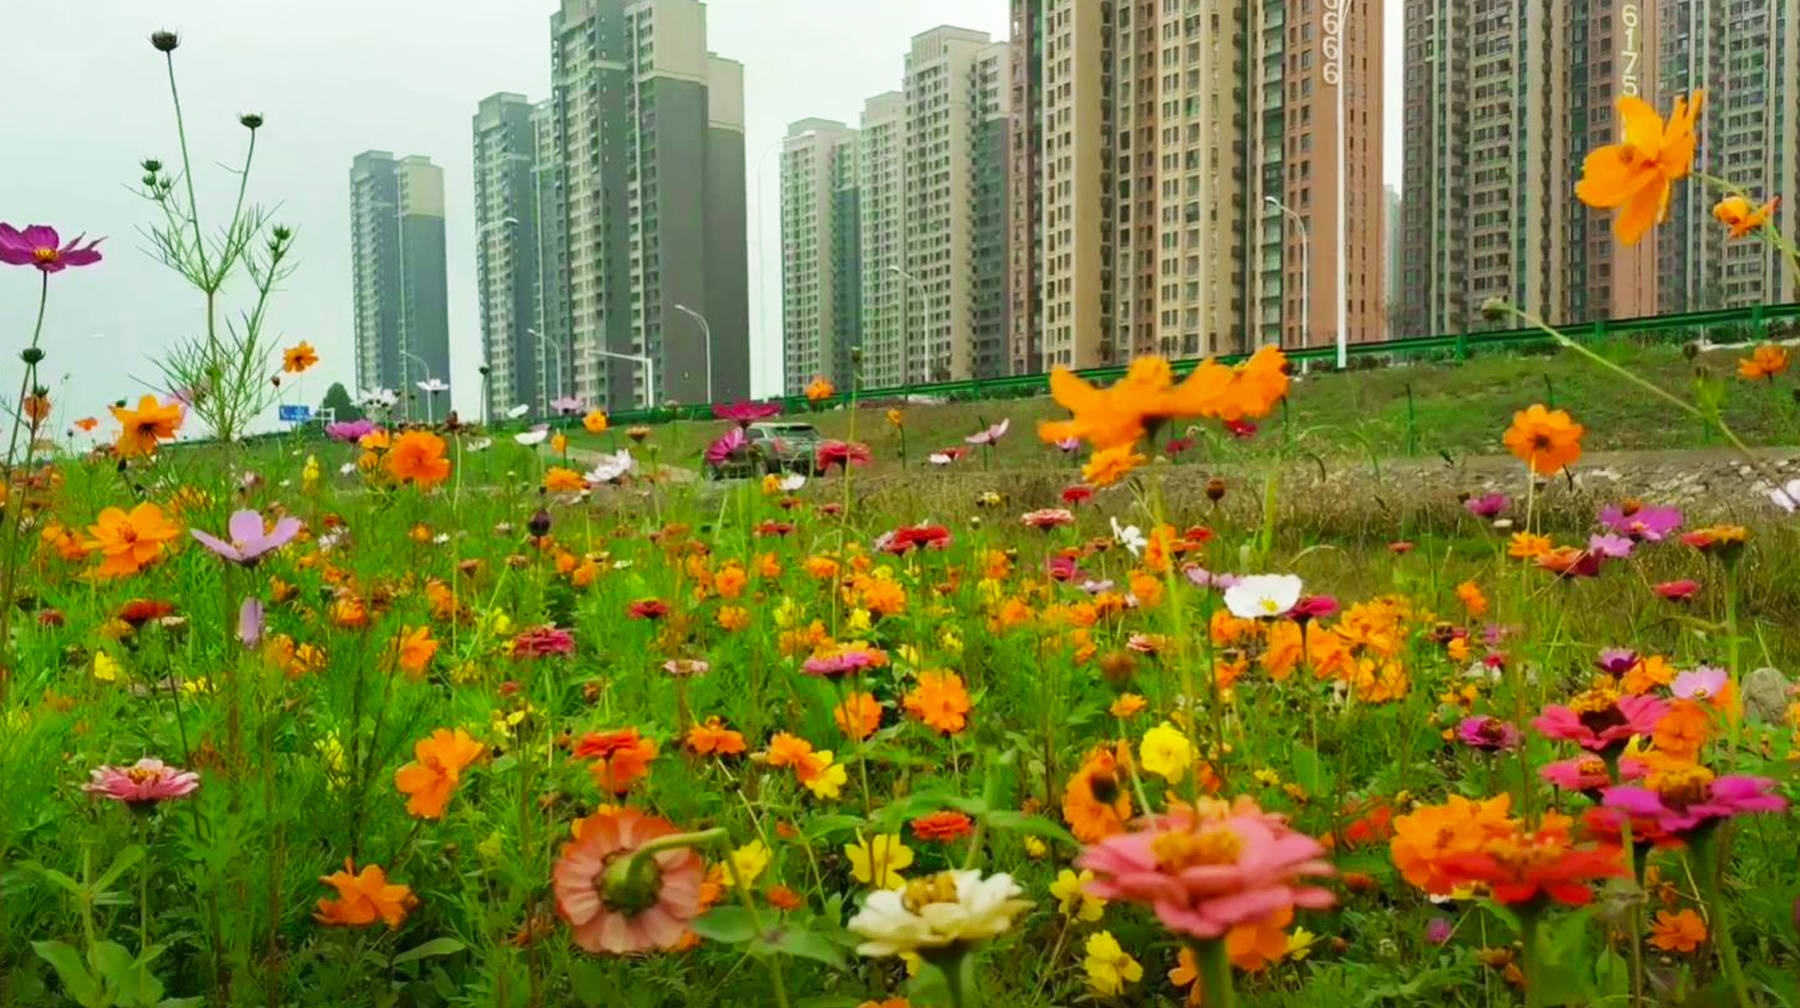 武汉郊区有座江滩花海:绵延花丛开到水边,景色像水彩画